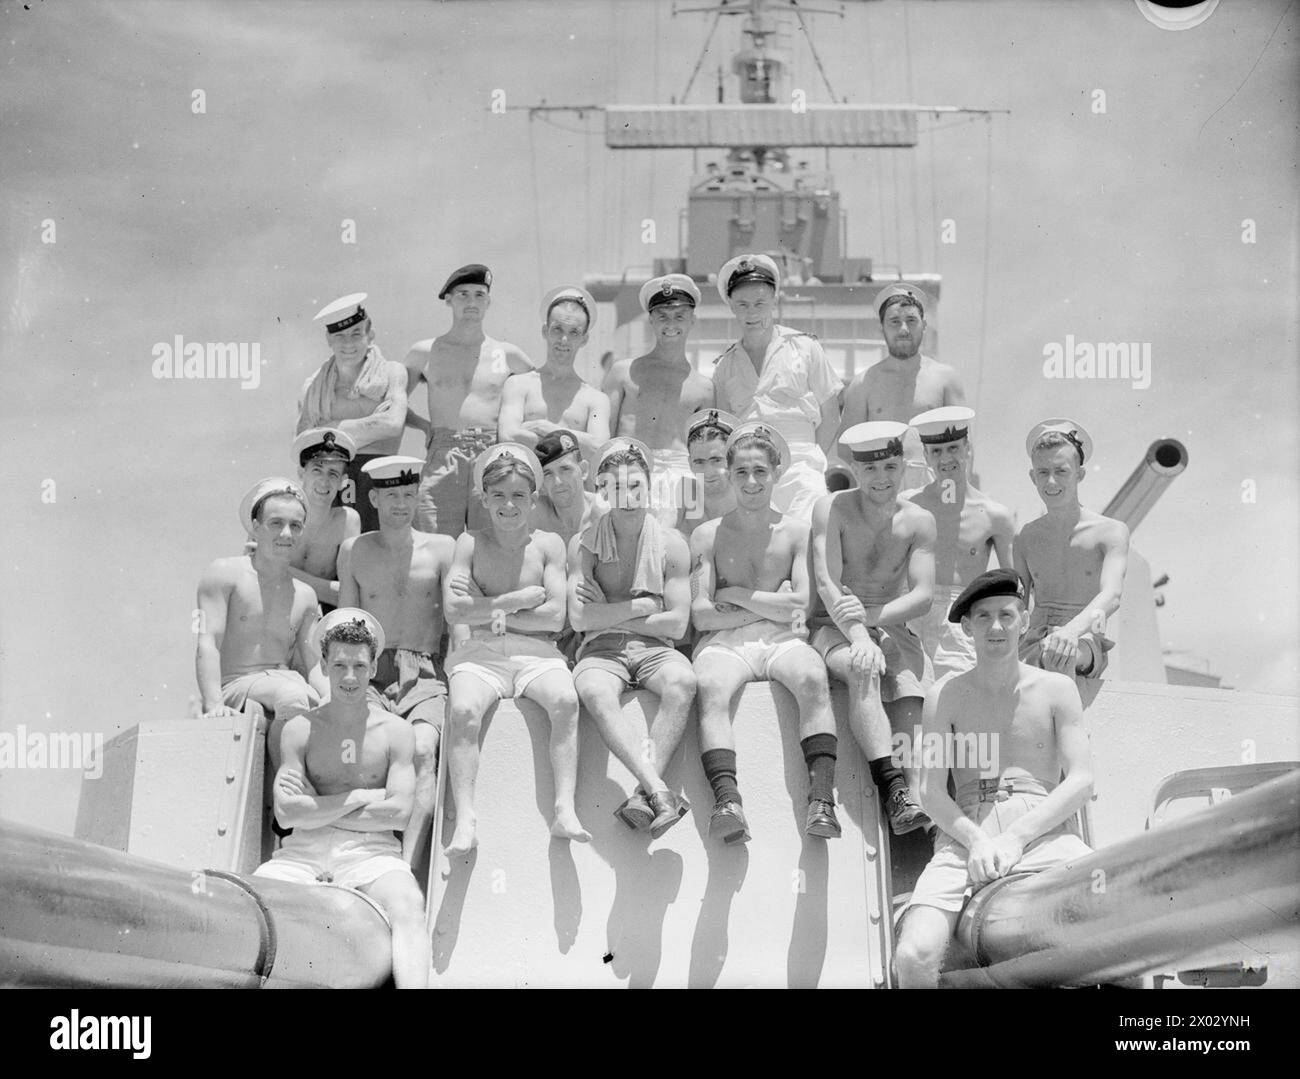 UOMINI DELLA HMS CEYLON. 30 SETTEMBRE 1945, COLOMBO, A BORDO DELLA HMS CEYLON IL GIORNO PRIMA DI SALPARE PER CASA ALLA FINE DELLA SUA MISSIONE CON LA FLOTTA BRITANNICA DELLE INDIE ORIENTALI. GLI UOMINI SONO RAGGRUPPATI PER AREA. - Interesse di Edimburgo. Da sinistra a destra: Seconda fila: Sto A Guyen, Aberdeen; Musc R C Smith, Leith; Able Seaman N Tullus, Edimburgo; CPO Tel F Strasser, Edimburgo; Lieut R G Tulloch, RNVR, Lossiemouth; Leading Seaman D Gray, Edimburgo. Seconda fila: L/Tel D McIntyre, Livingstone Stn; Stoker A Thompson, Lieth; Marine A S Renwick; East Calden; Able Seaman M MacDonald, Perth; Cook J C Bryson, Kirkaldy. Prima fila Foto Stock